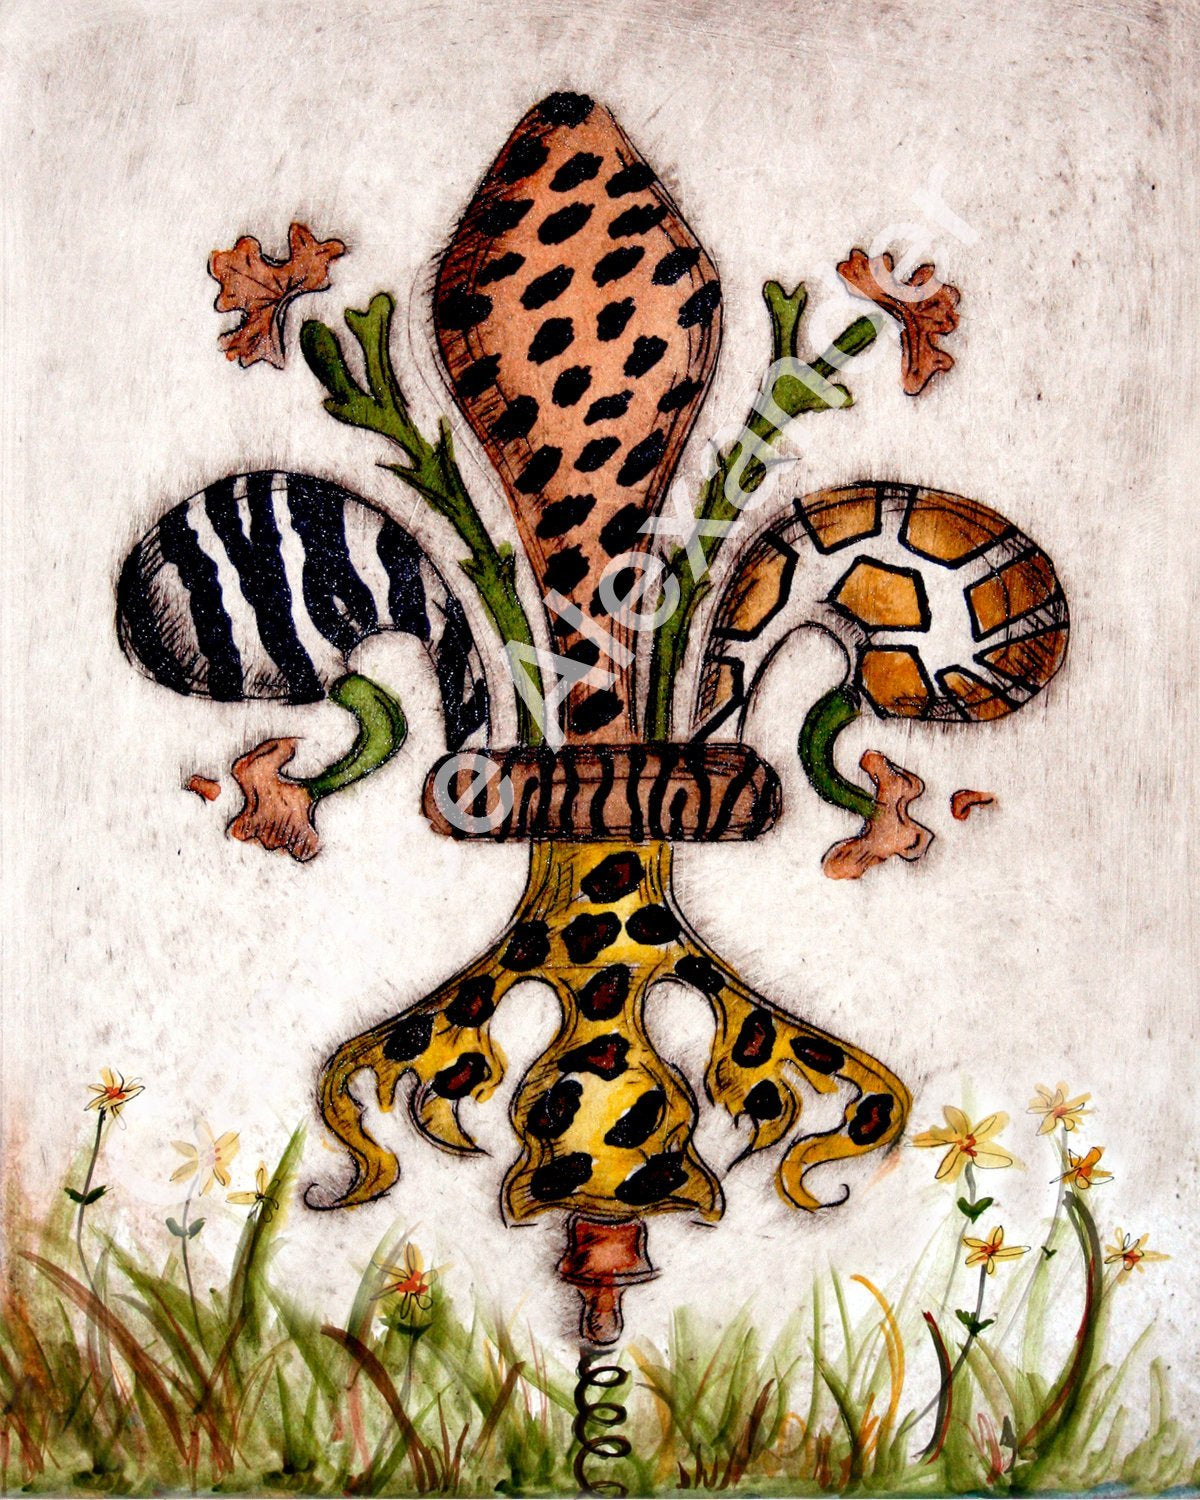 Safari 2 Fleur De Lis design by Candice Alexander Fleur De Lis art by Candice Alexander, Louisiana Artist